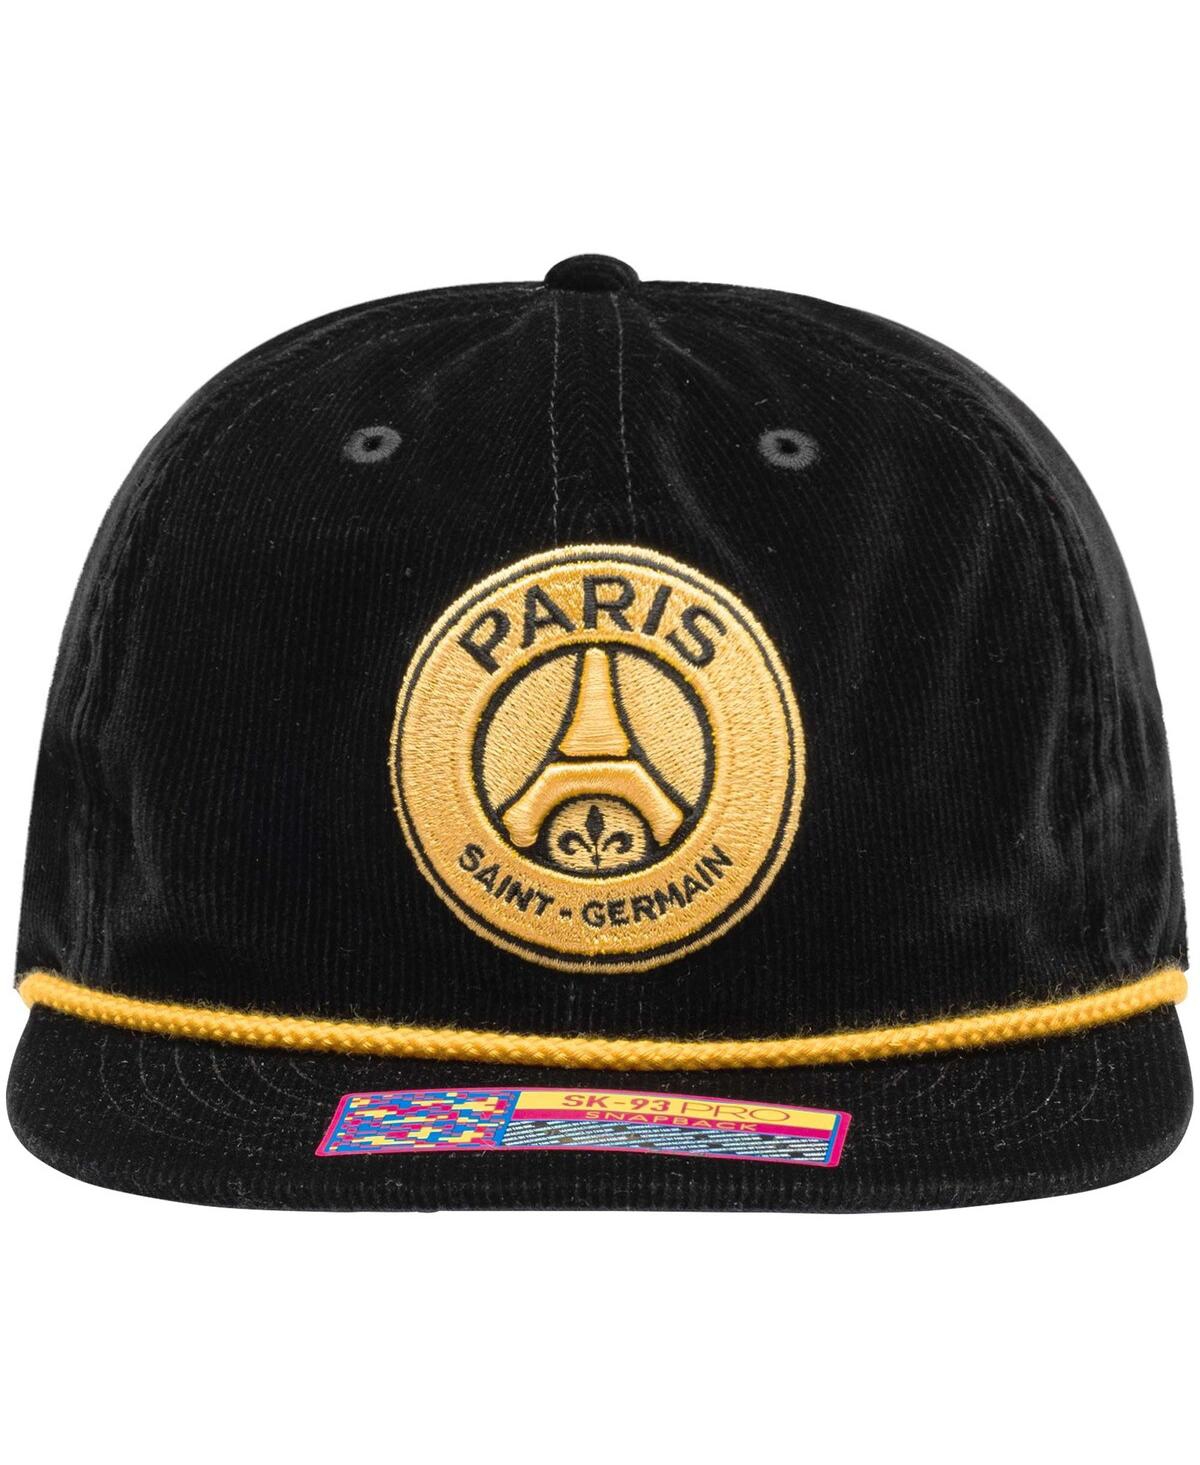 Shop Fan Ink Men's Black Paris Saint-germain Snow Beach Adjustable Hat